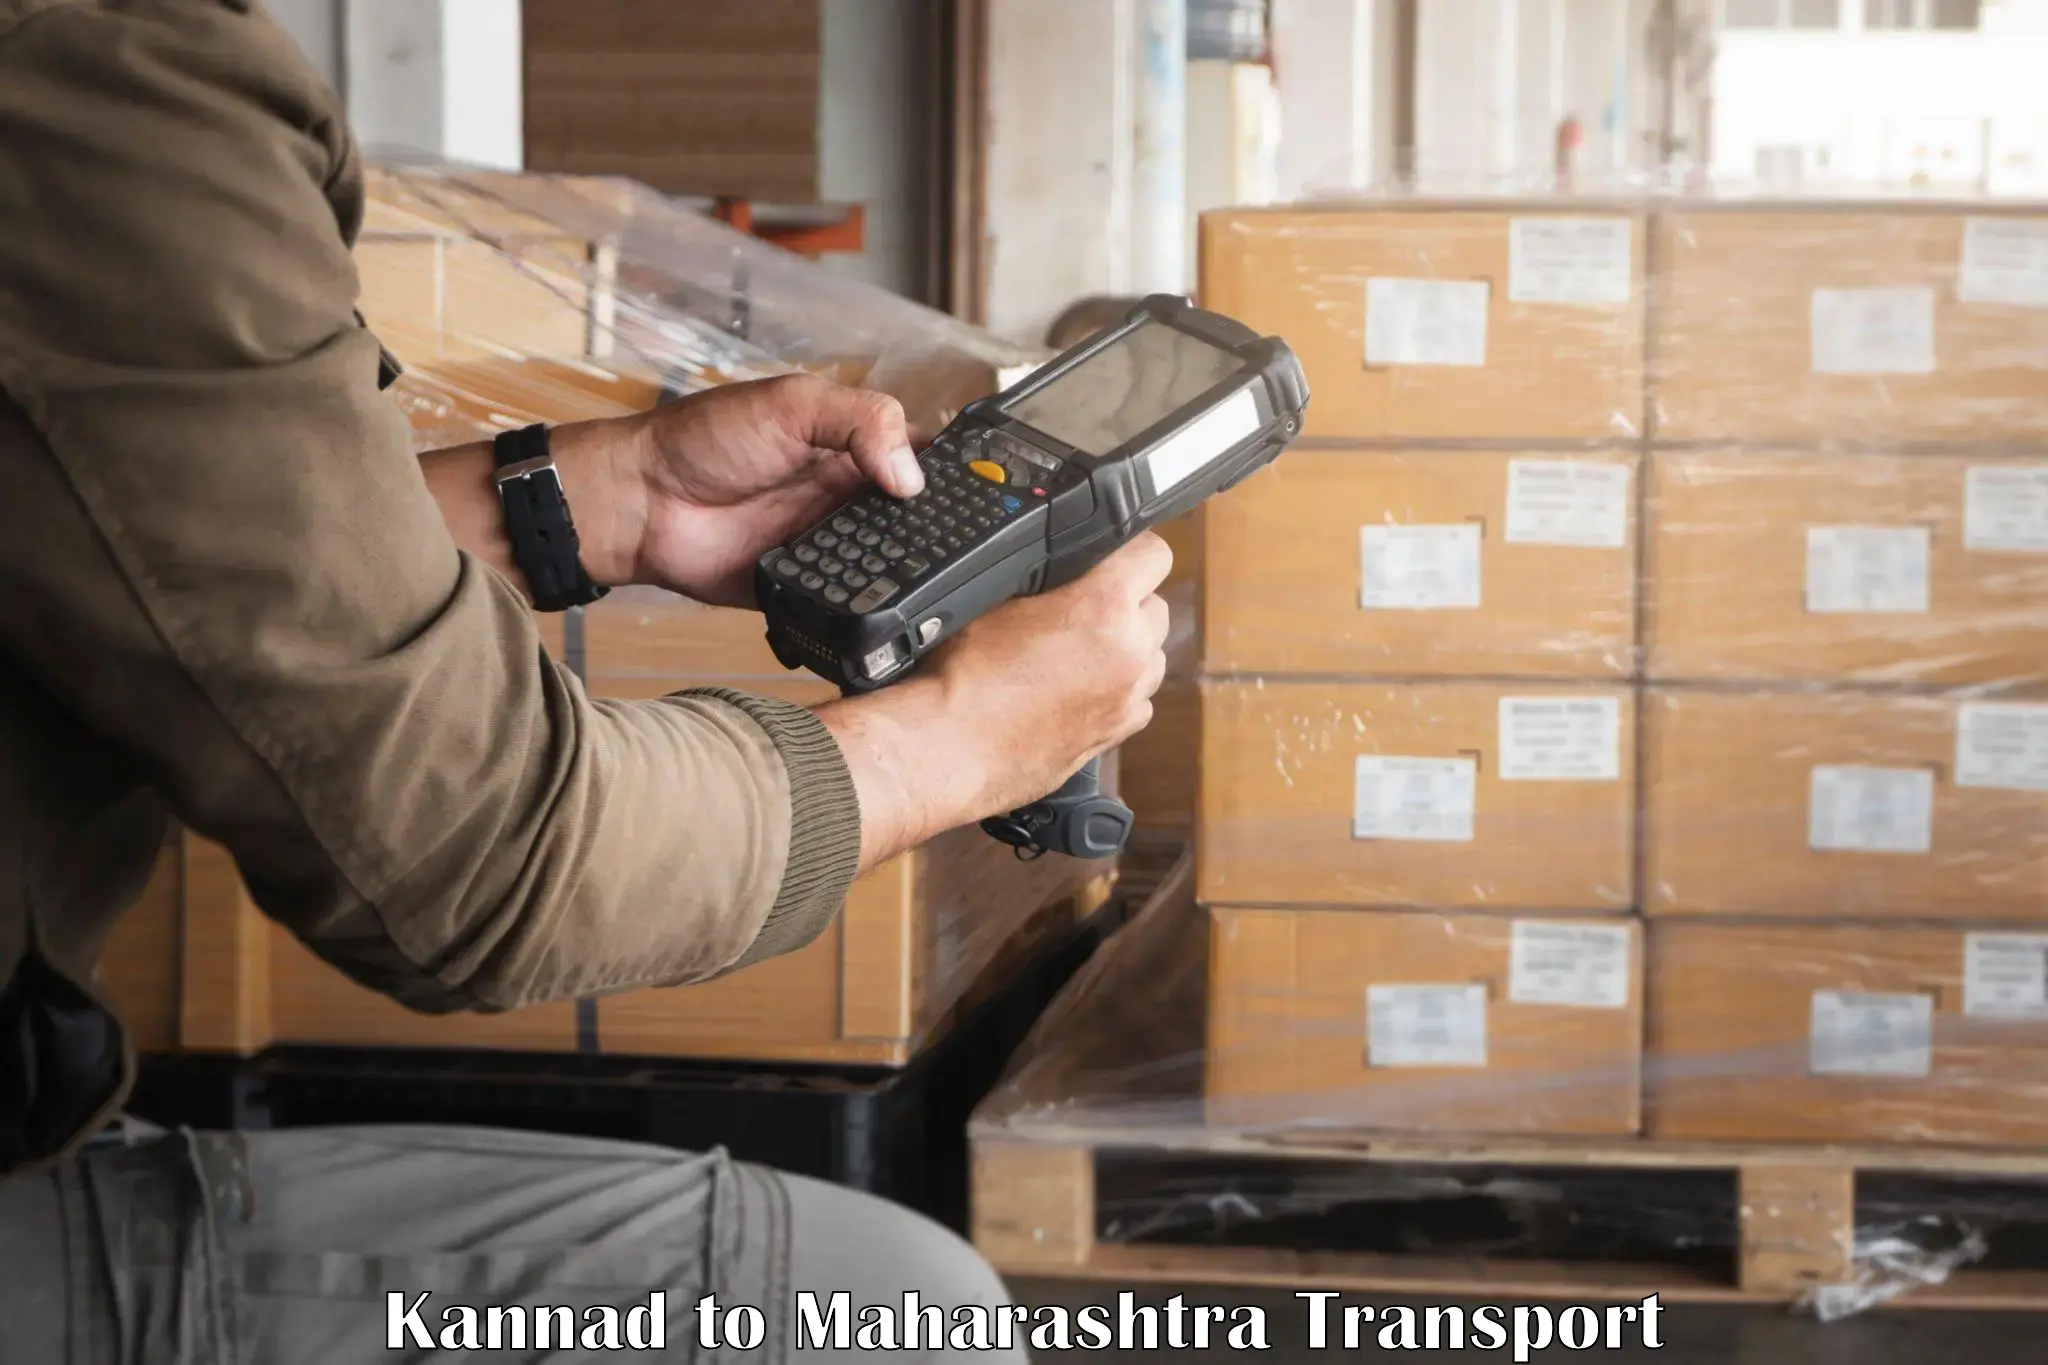 Daily transport service in Kannad to Maharashtra